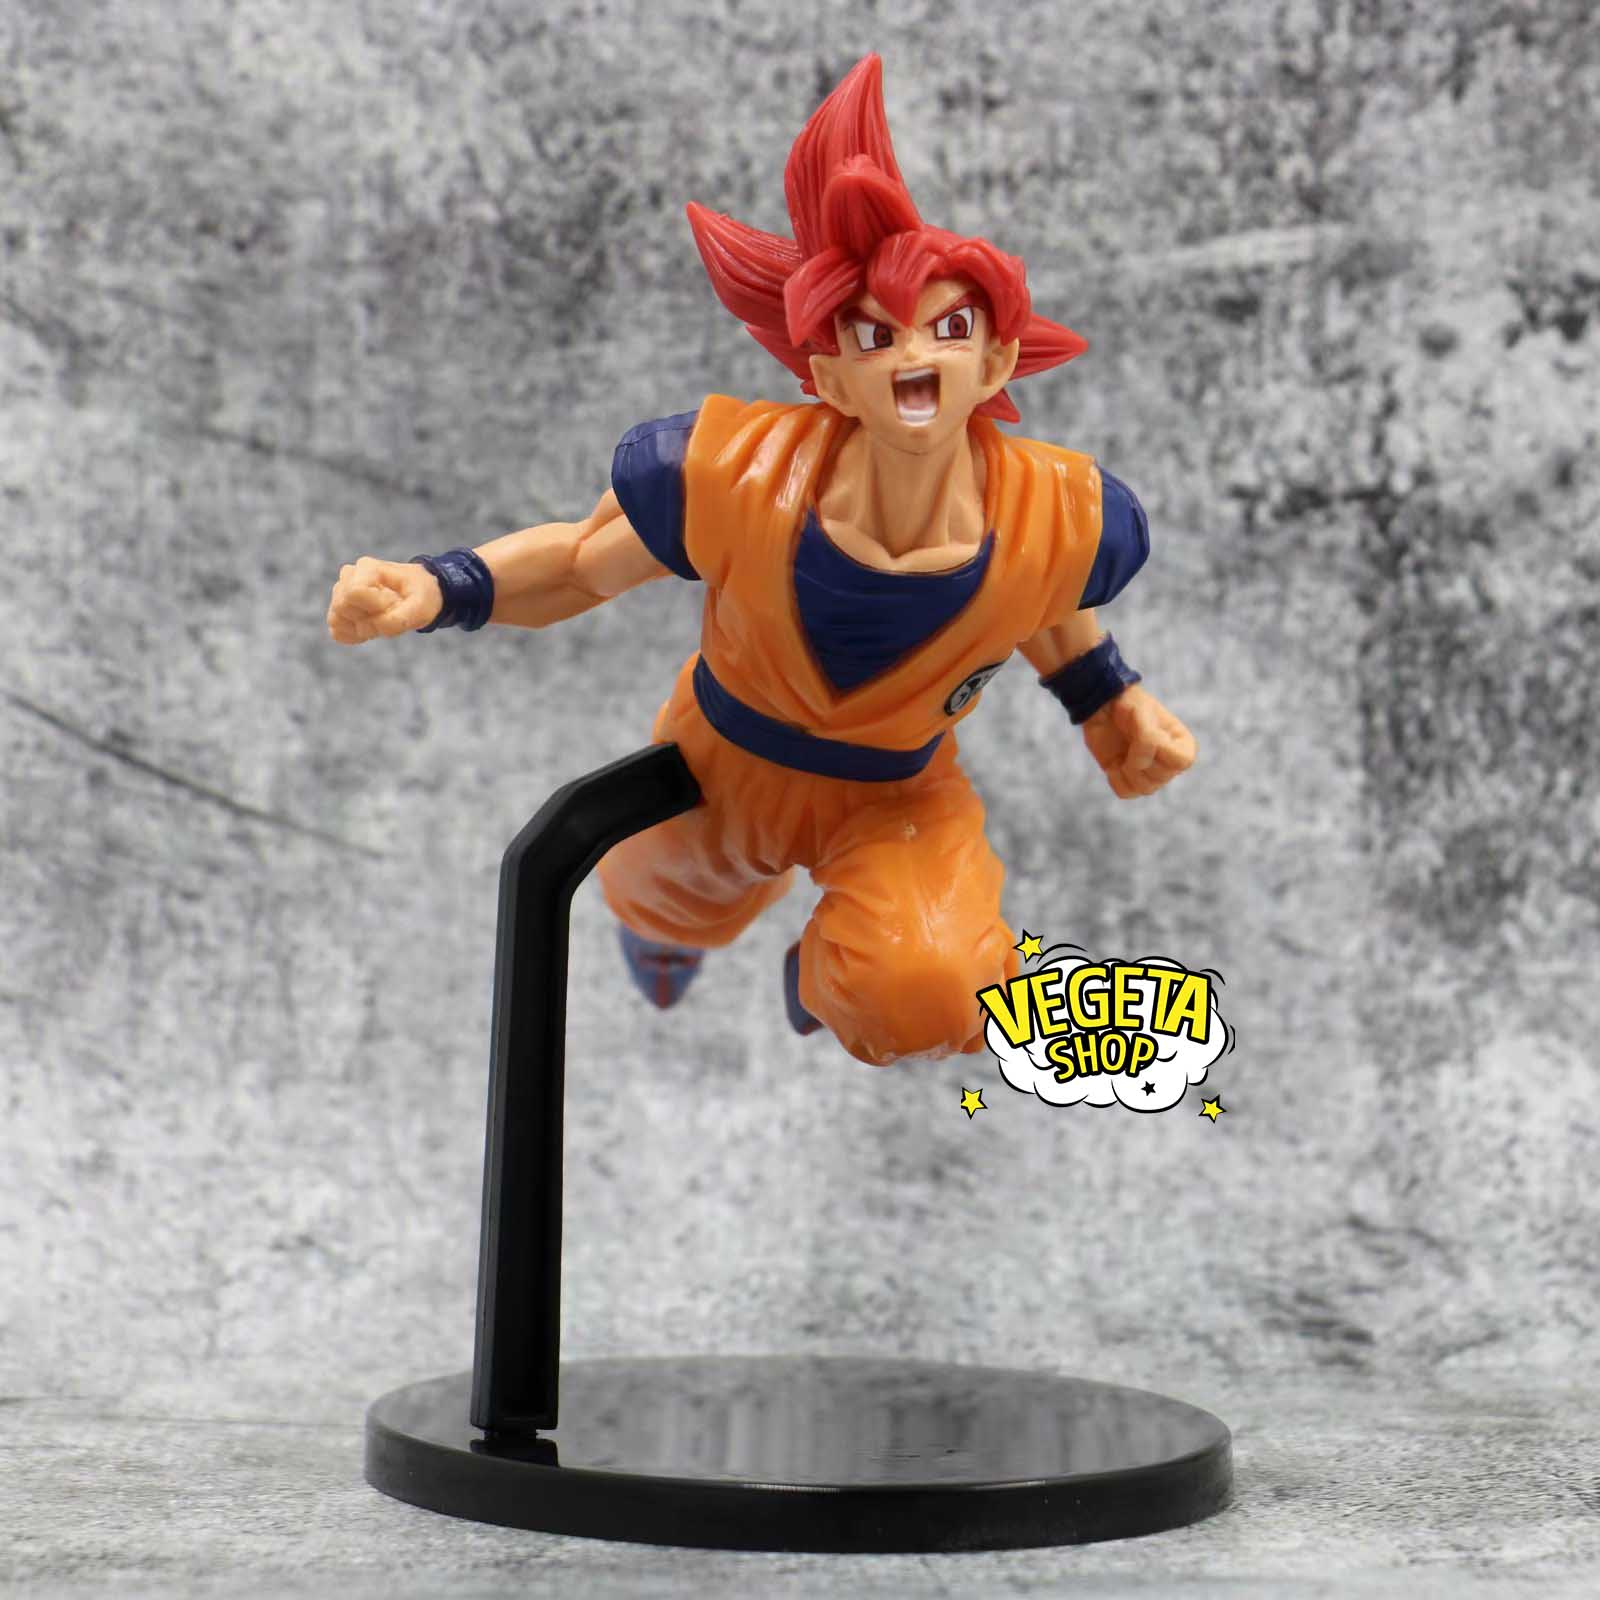 Hình mô hình Goku God: Bạn là fan Dragon Ball thì không thể bỏ qua những bức ảnh về mô hình Goku God được chế tác cực kỳ tỉ mỉ và chân thật. Hãy để mình mê mẩn trước một siêu phẩm nghệ thuật về chàng trai Saiyan này nhé.